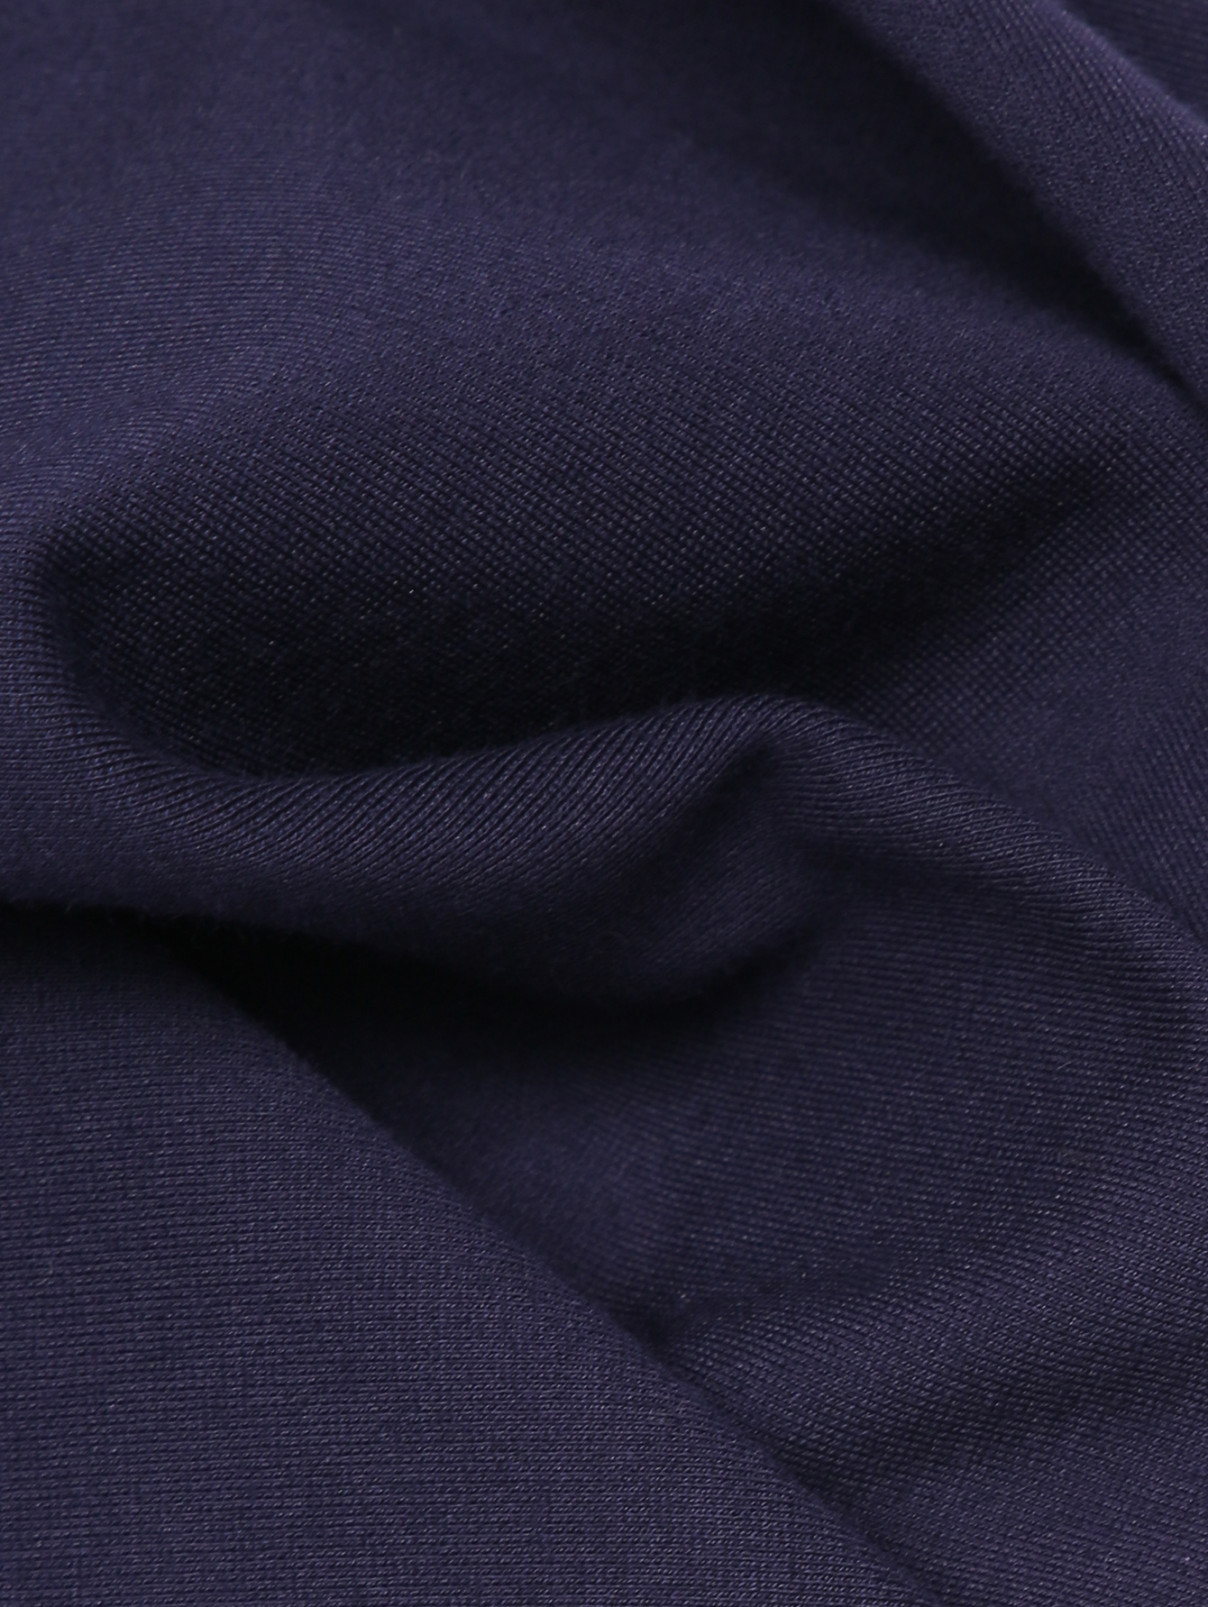 Однотонная блуза с объемными рукавами Dorothee Schumacher  –  Деталь  – Цвет:  Синий